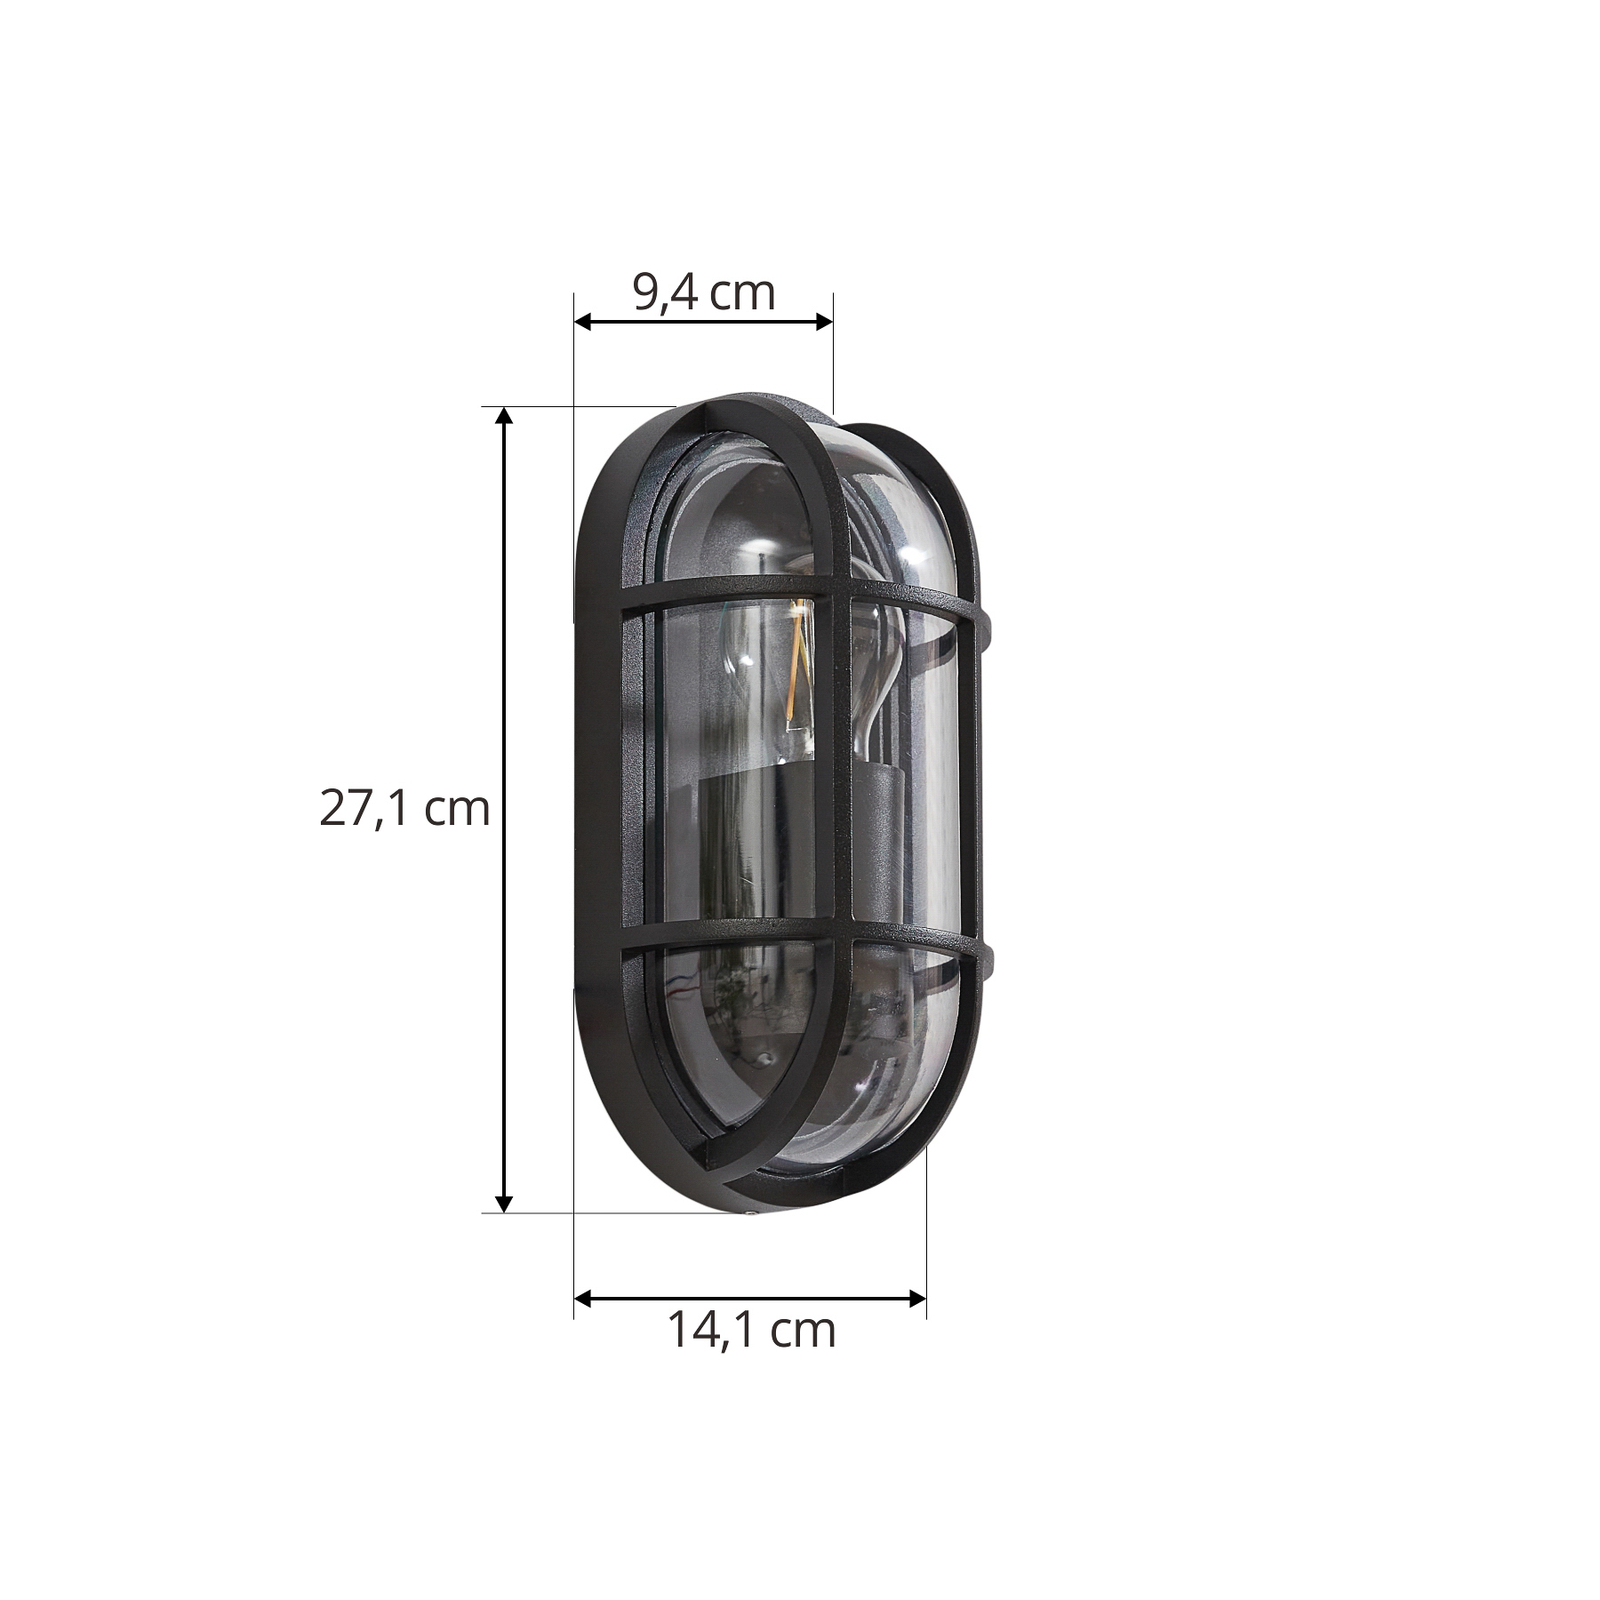 Lucande vanjska zidna svjetiljka Serine, 27,1 cm, crna, aluminij